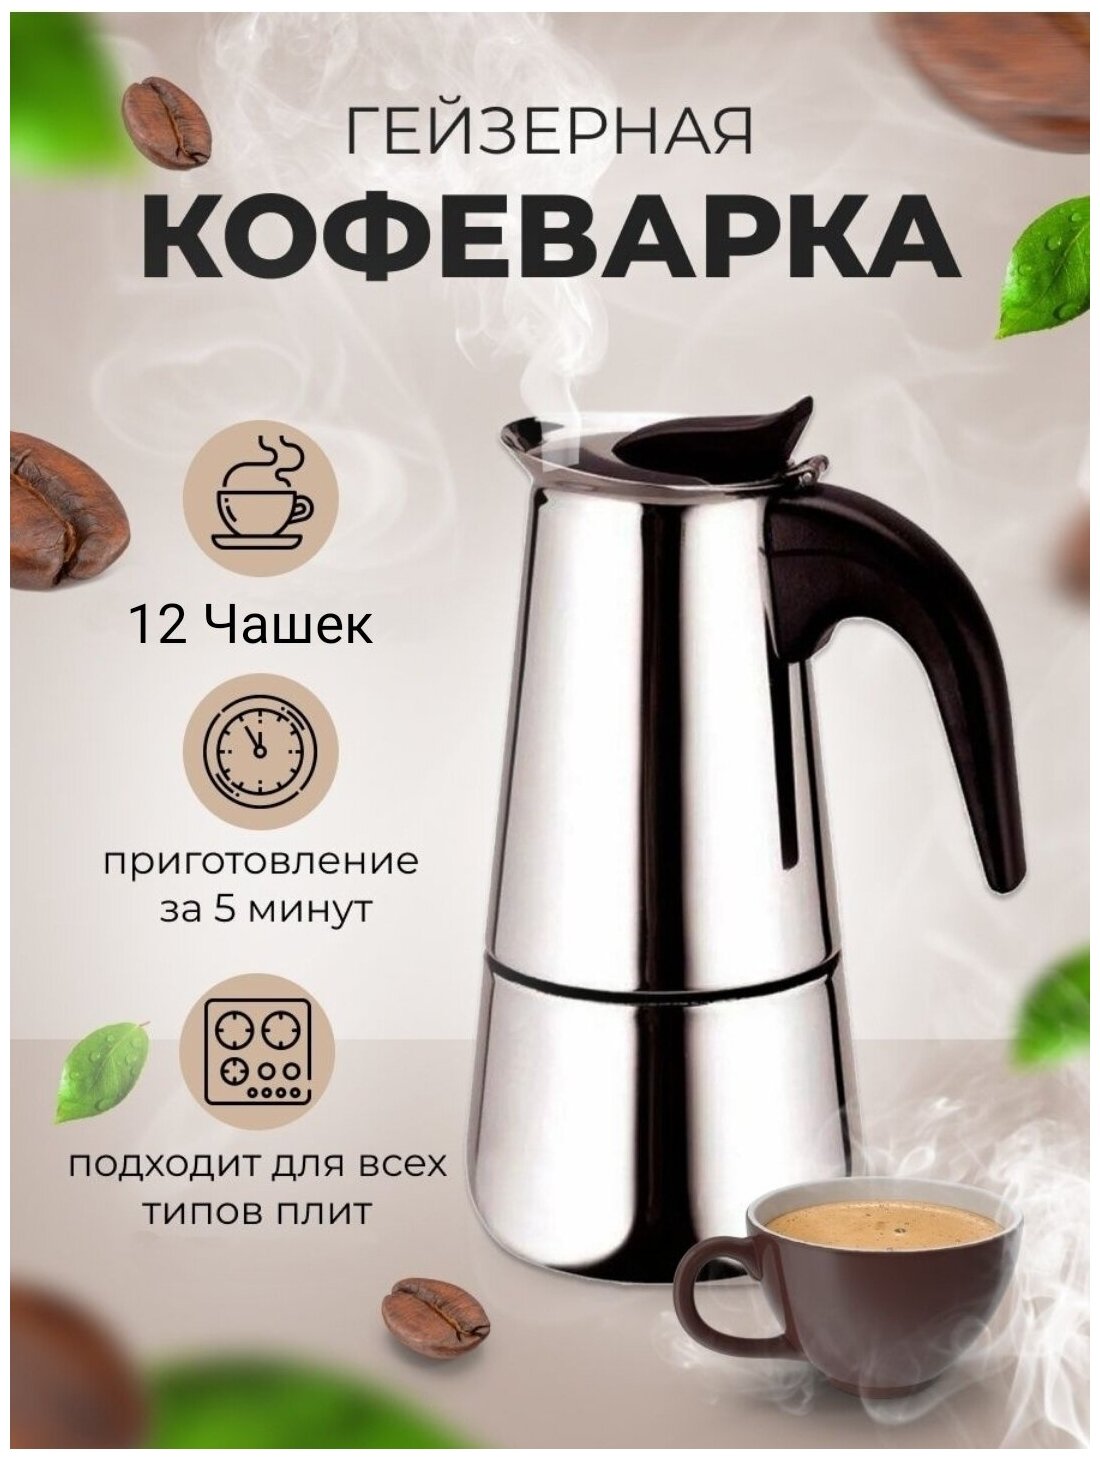 Гейзерная индукционная кофеварка Espresso Maker на 12 чашек